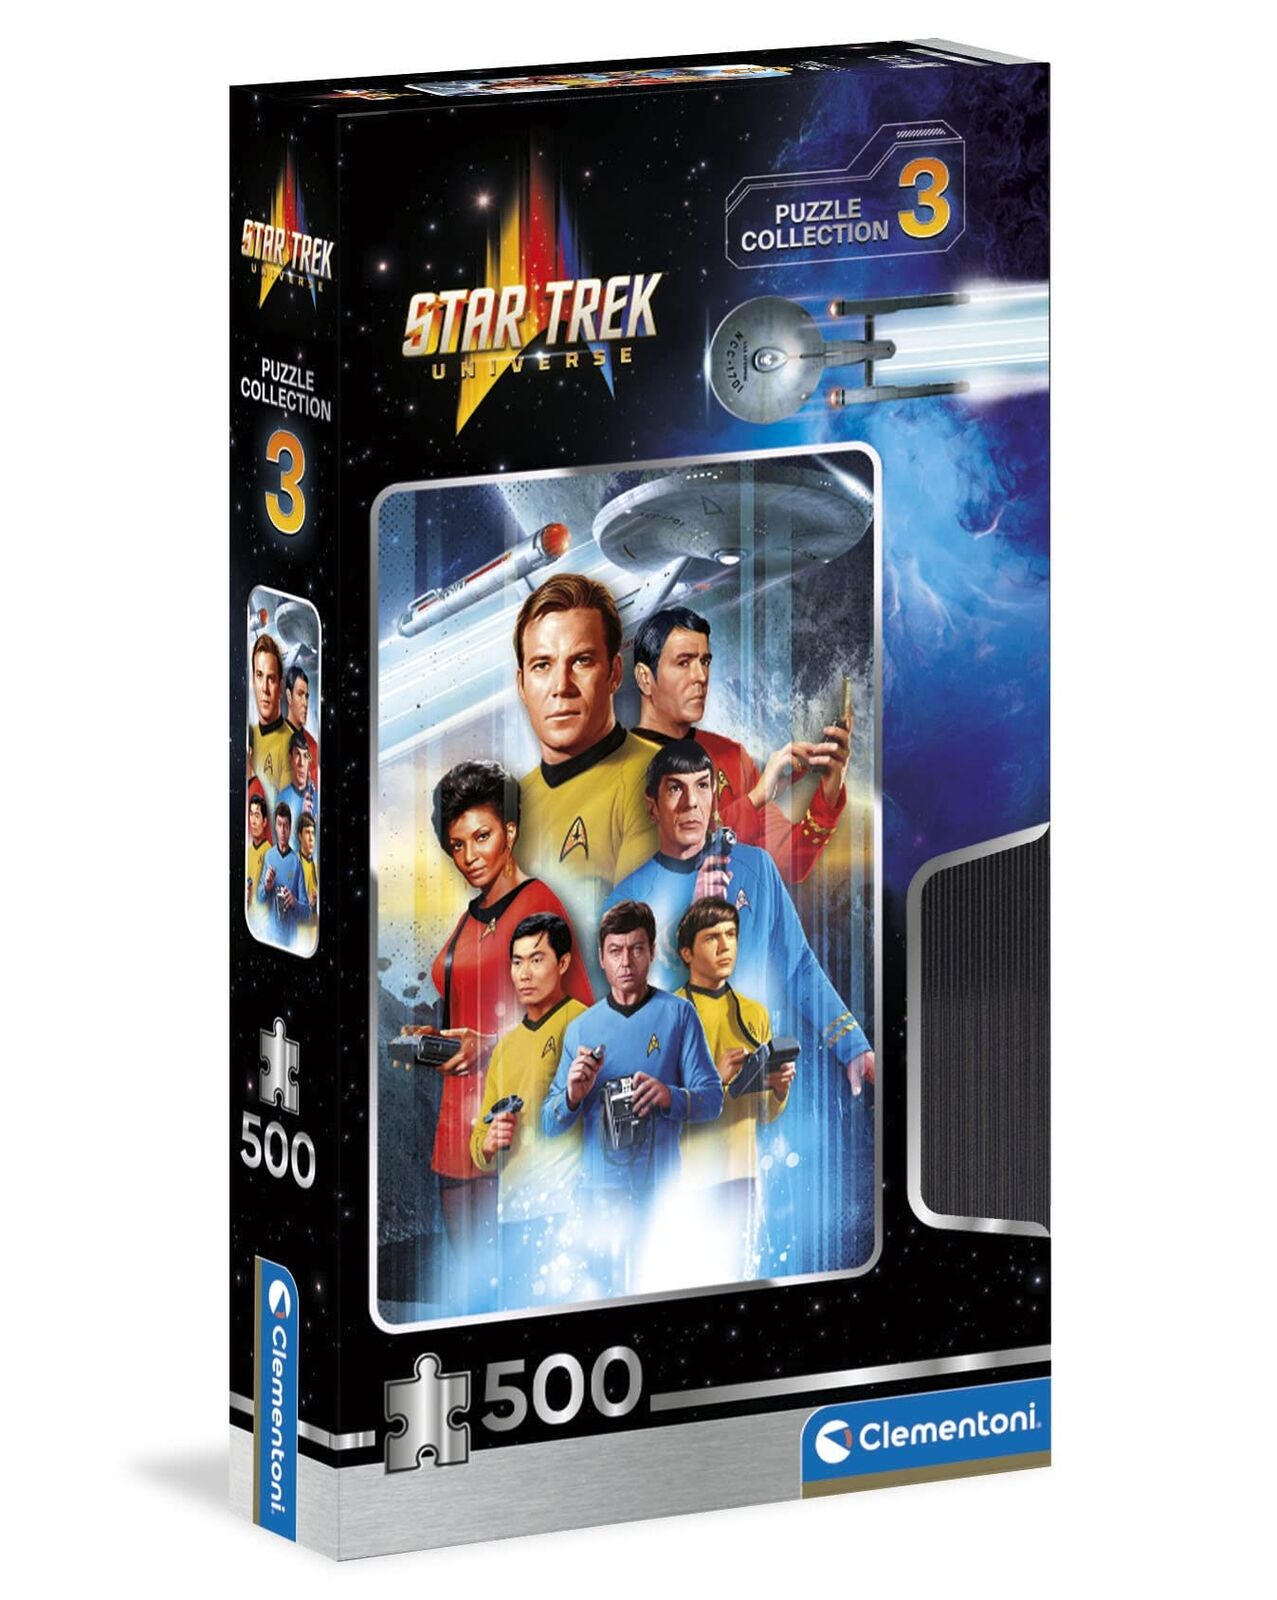 Clementoni Puzzle Star Trek 'Puzzle Collection 3' 500 pcs